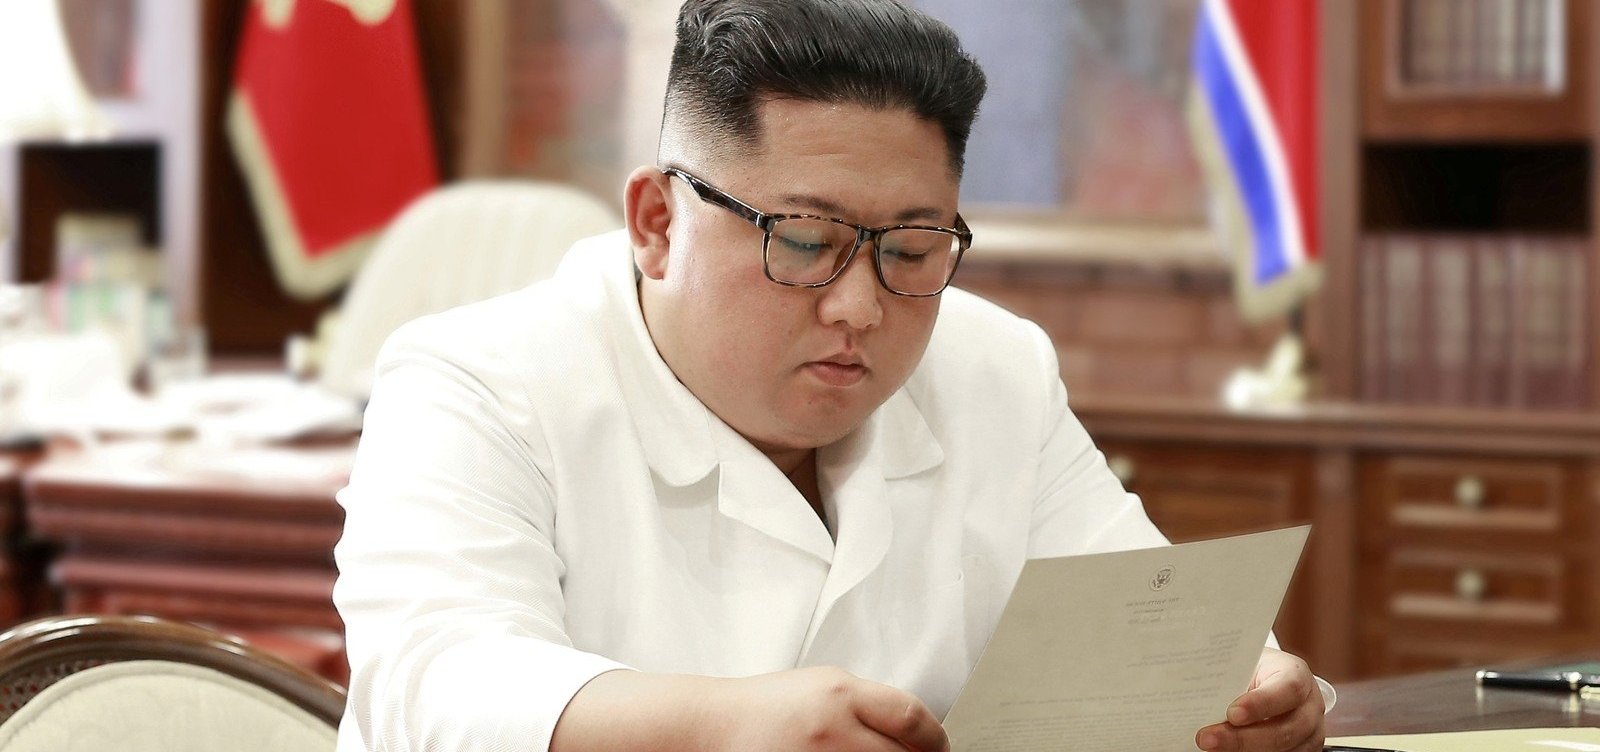 Kim recebe carta de Trump e se diz satisfeito com 'excelente' conteúdo